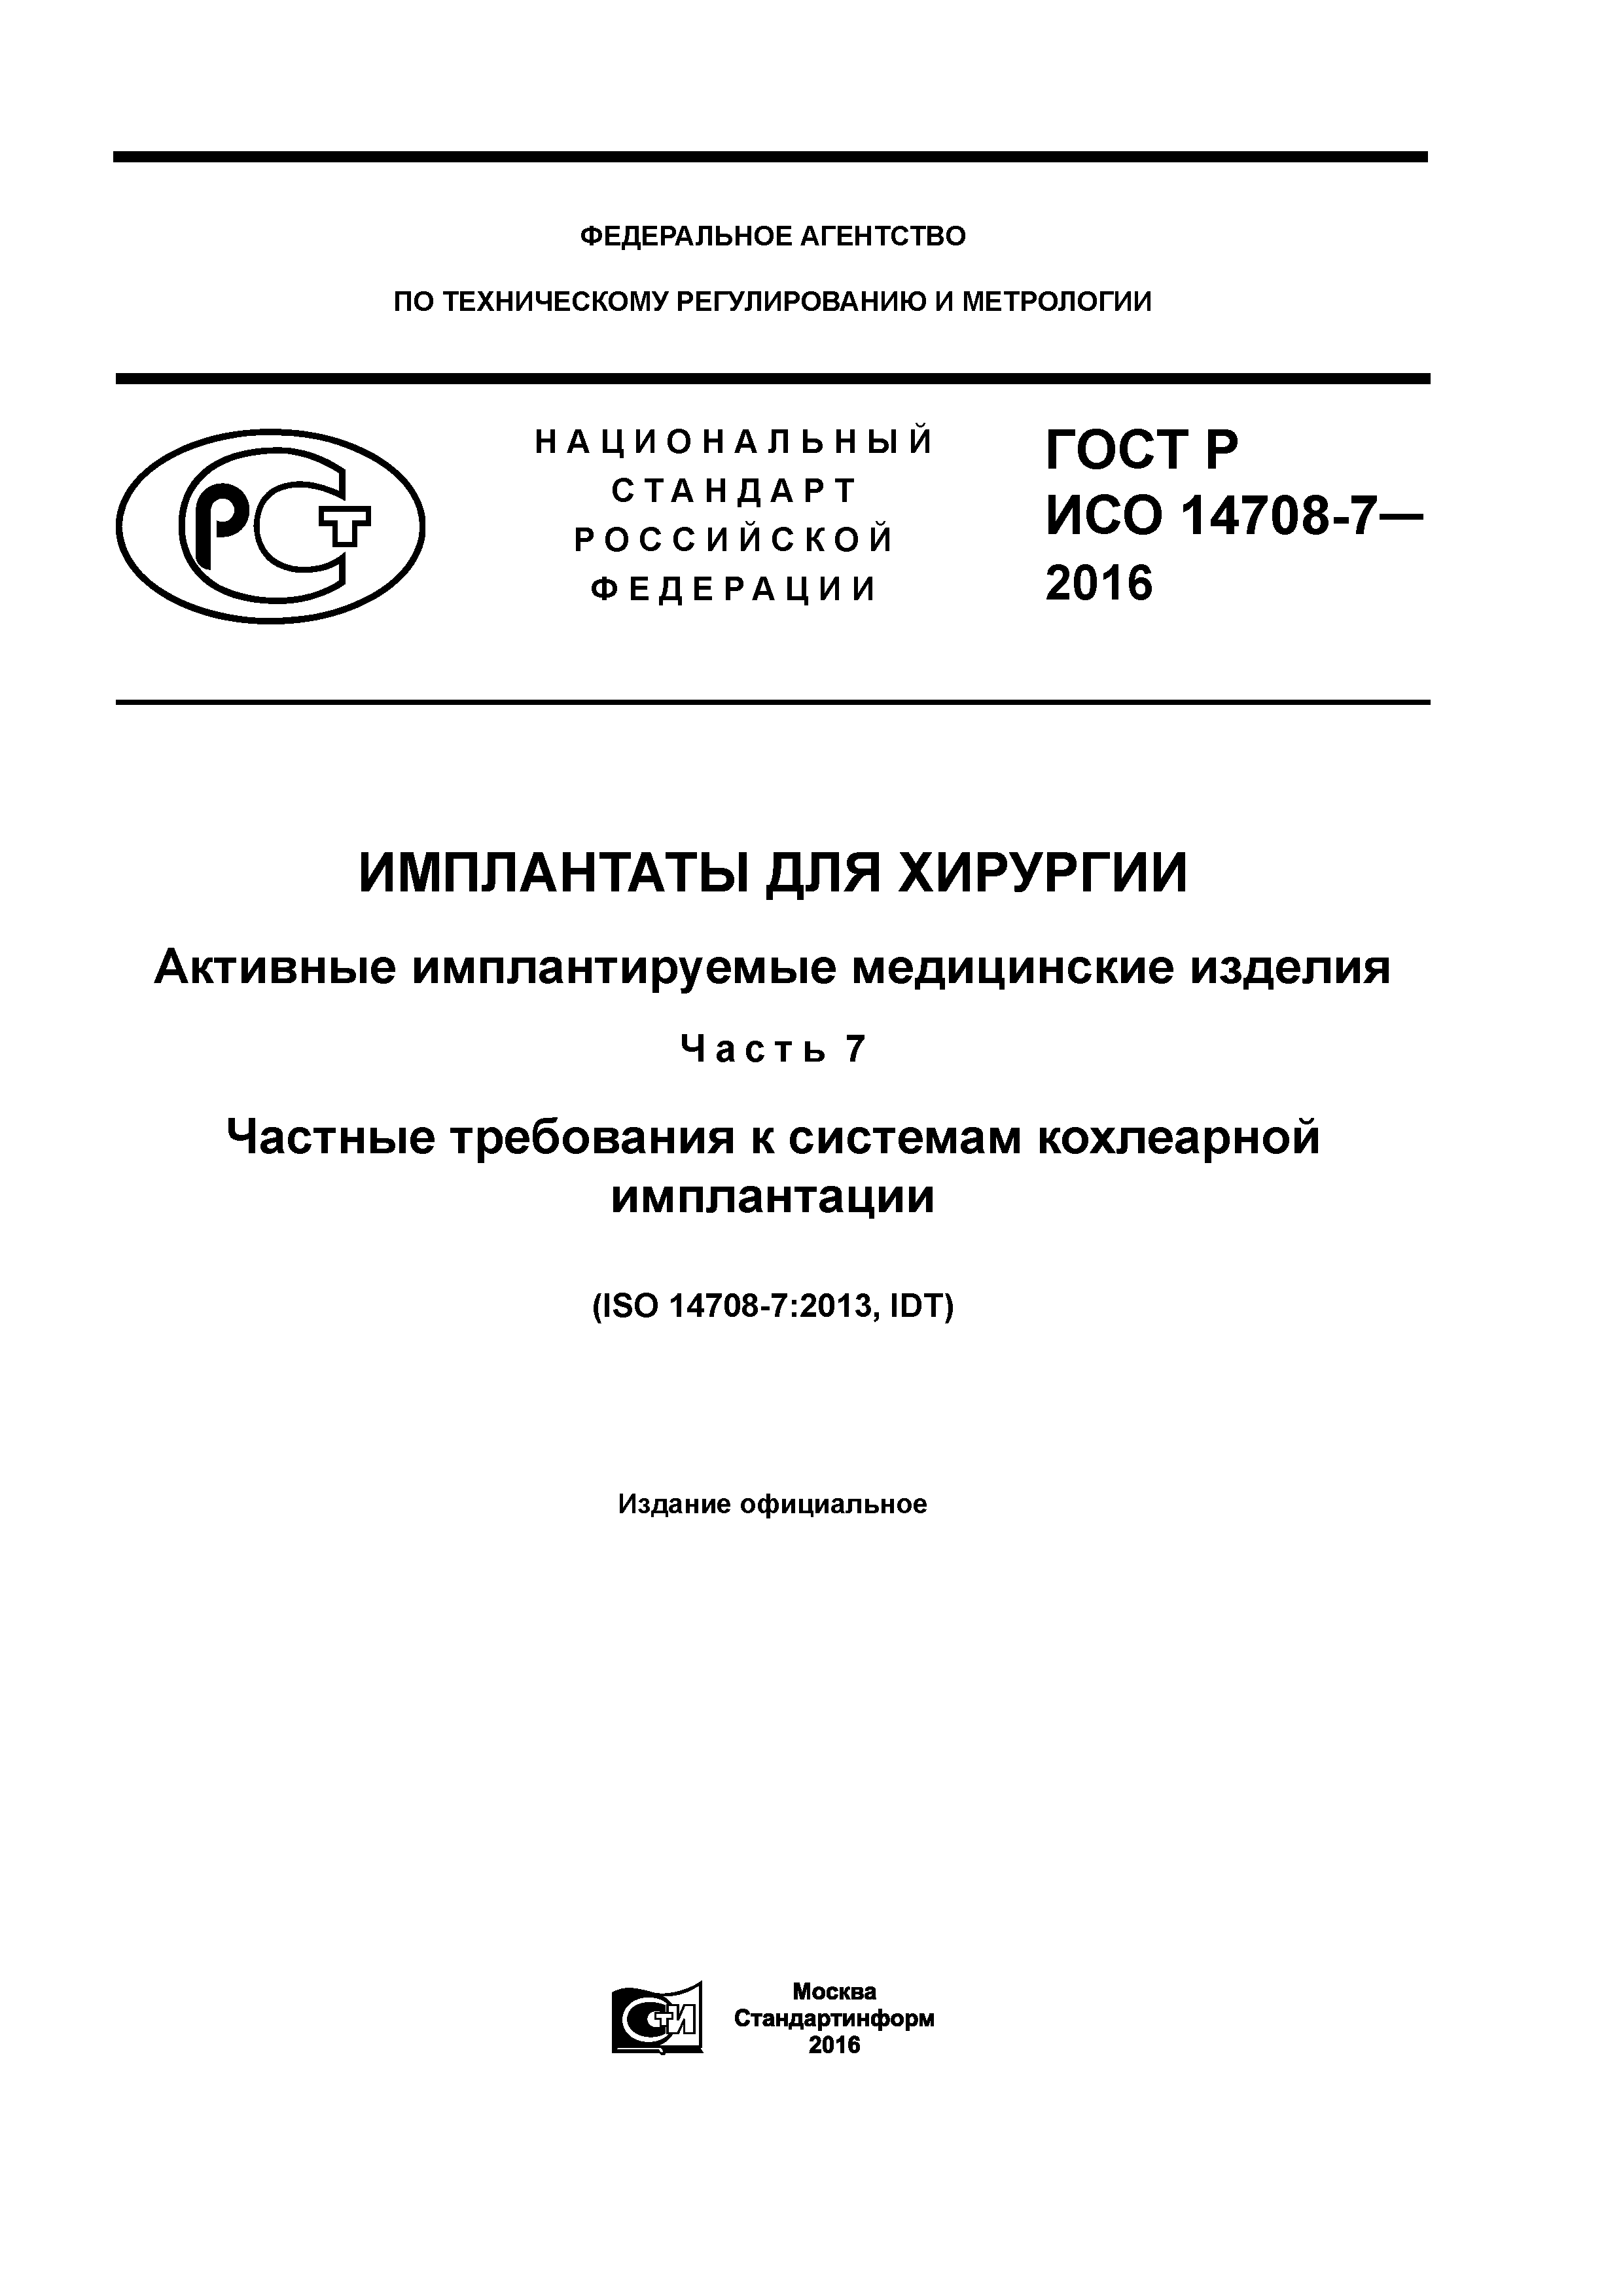 ГОСТ Р ИСО 14708-7-2016